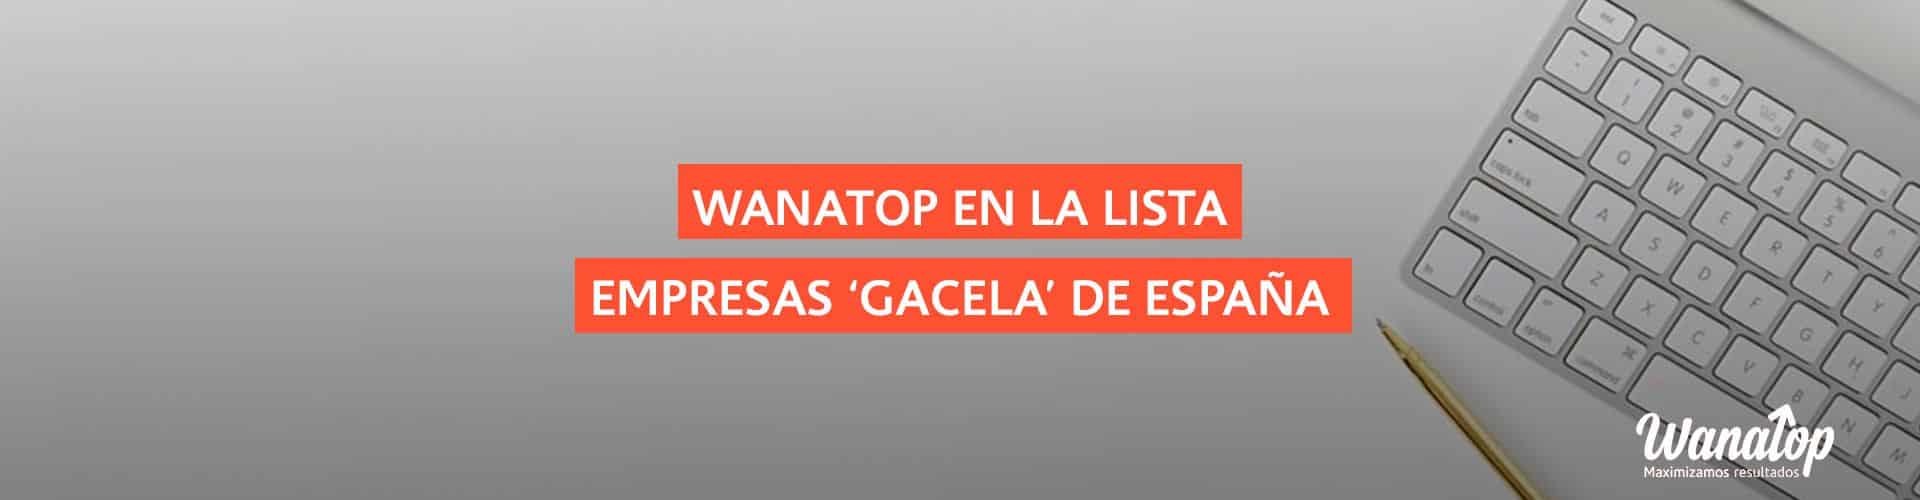 empresas gacela lista Wanatop se cuela en la lista de empresas ‘gacela’ en España